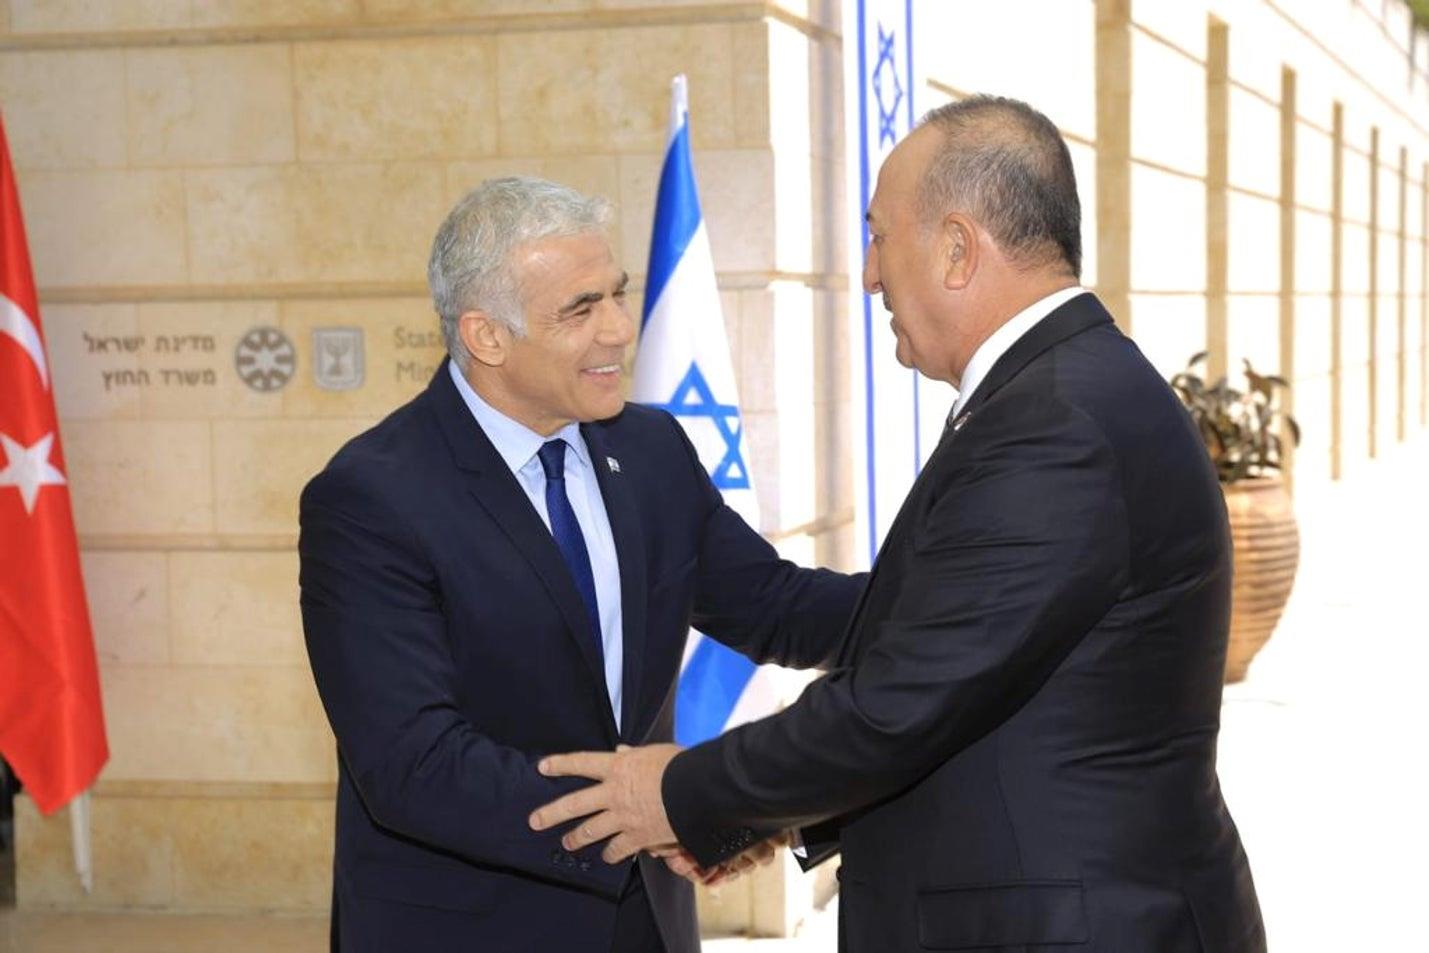 以色列宣佈將全面恢復與土耳其的外交關係 | 國際 - 香港中通社